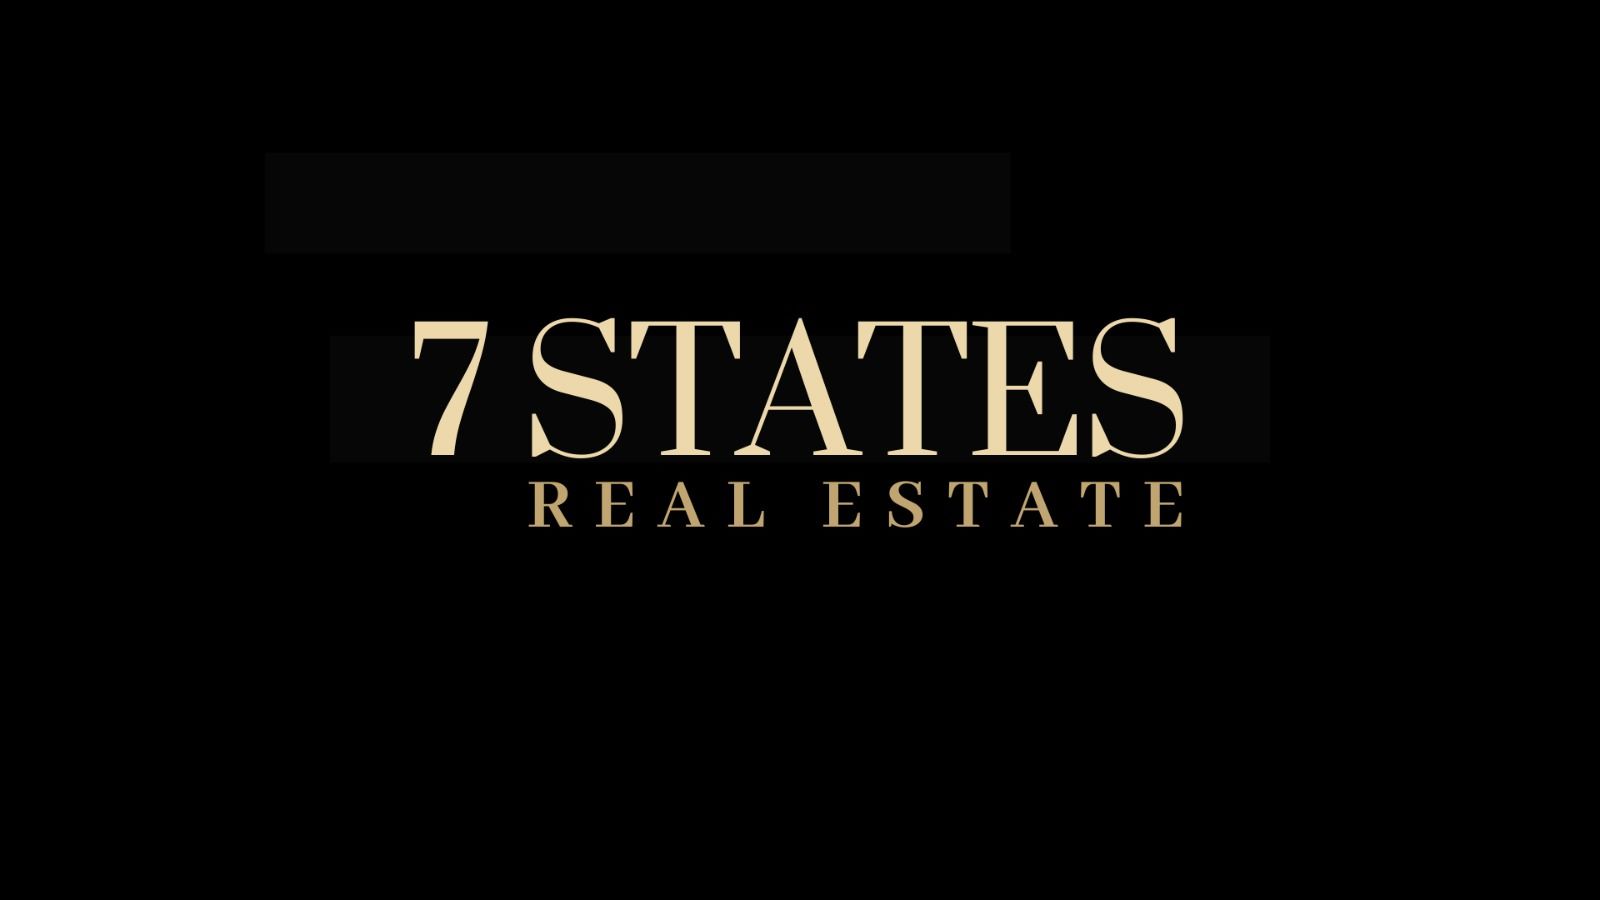 7 States Real Estate